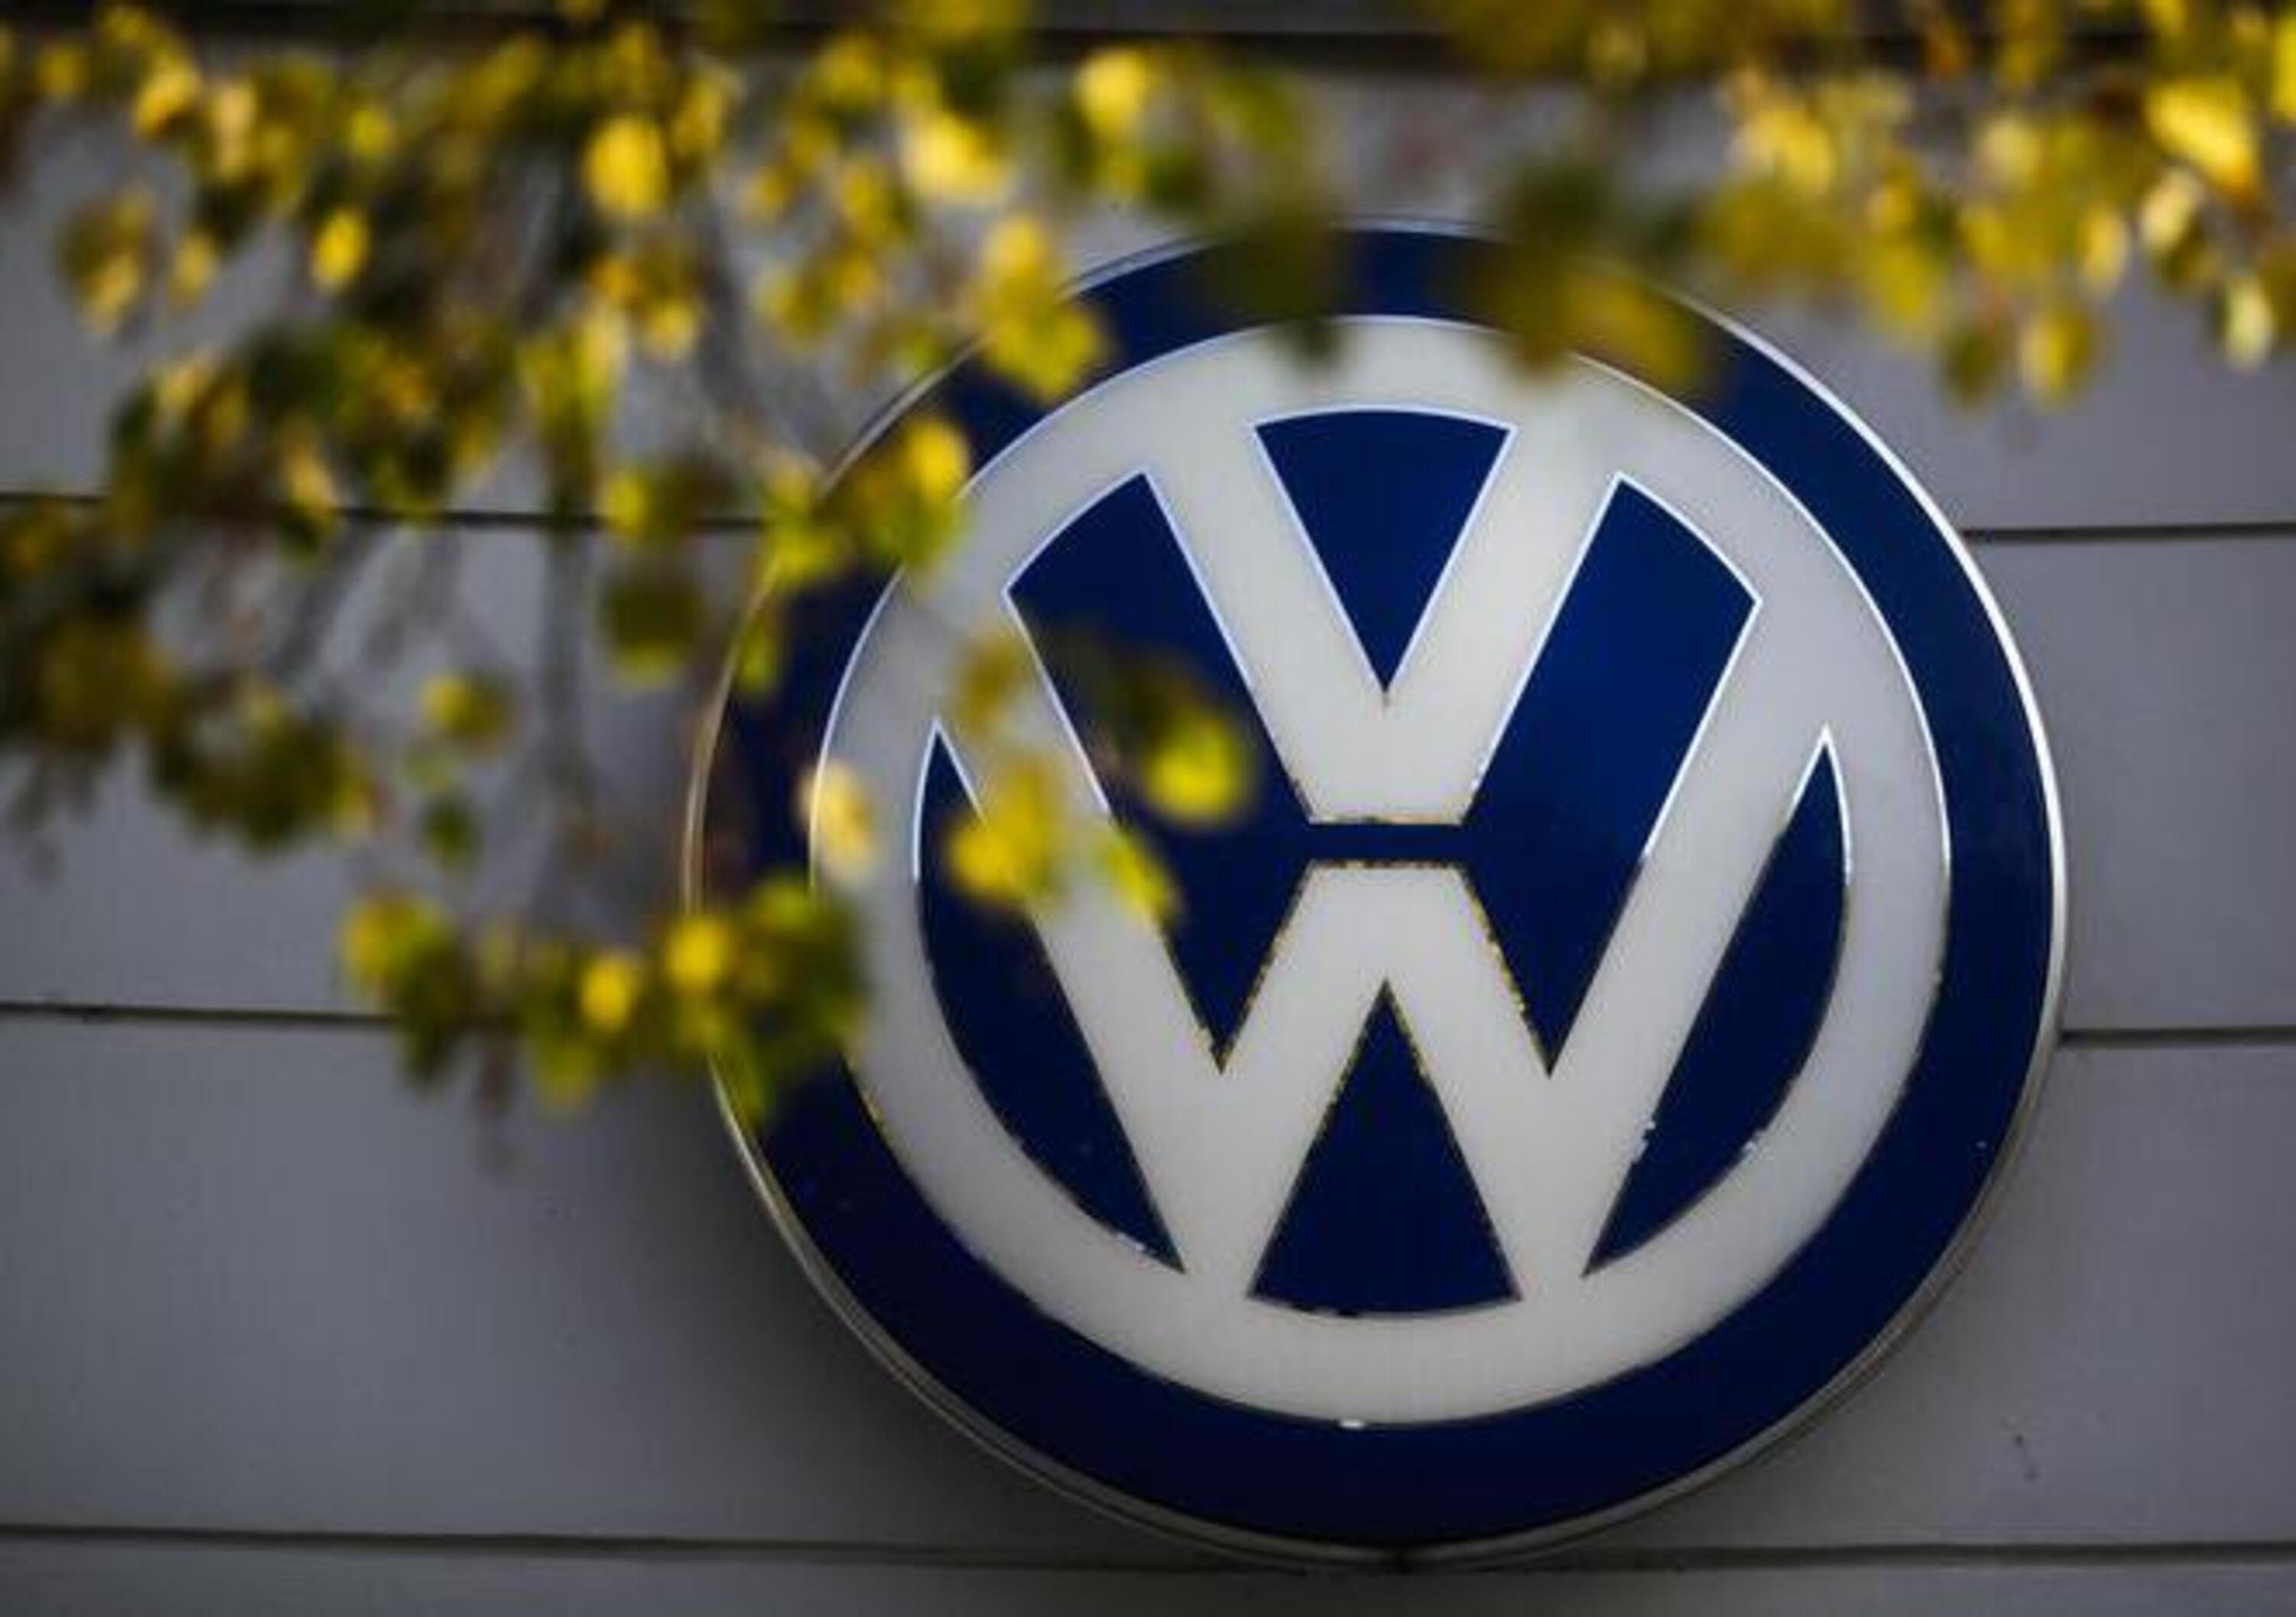 Dieselgate, Volkswagen accusata di aver violato i limiti sulle emissioni in Canada